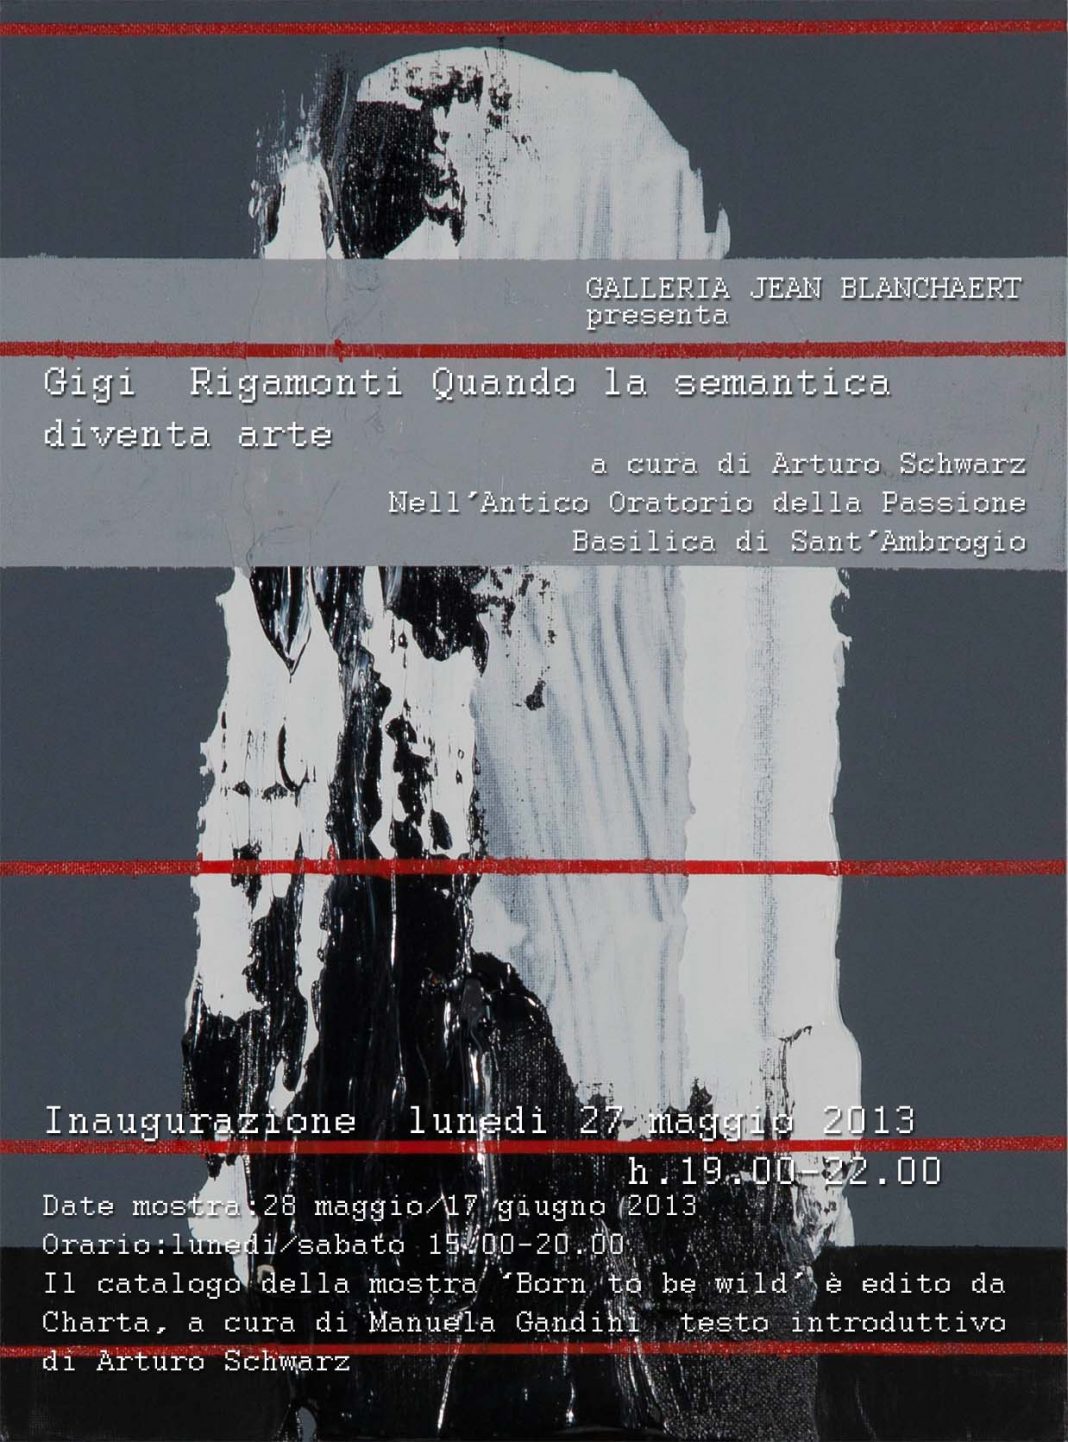 Gigi  Rigamonti – Quando la semantica diventa artehttps://www.exibart.com/repository/media/eventi/2013/05/gigi-rigamonti-8211-quando-la-semantica-diventa-arte-1068x1442.jpg